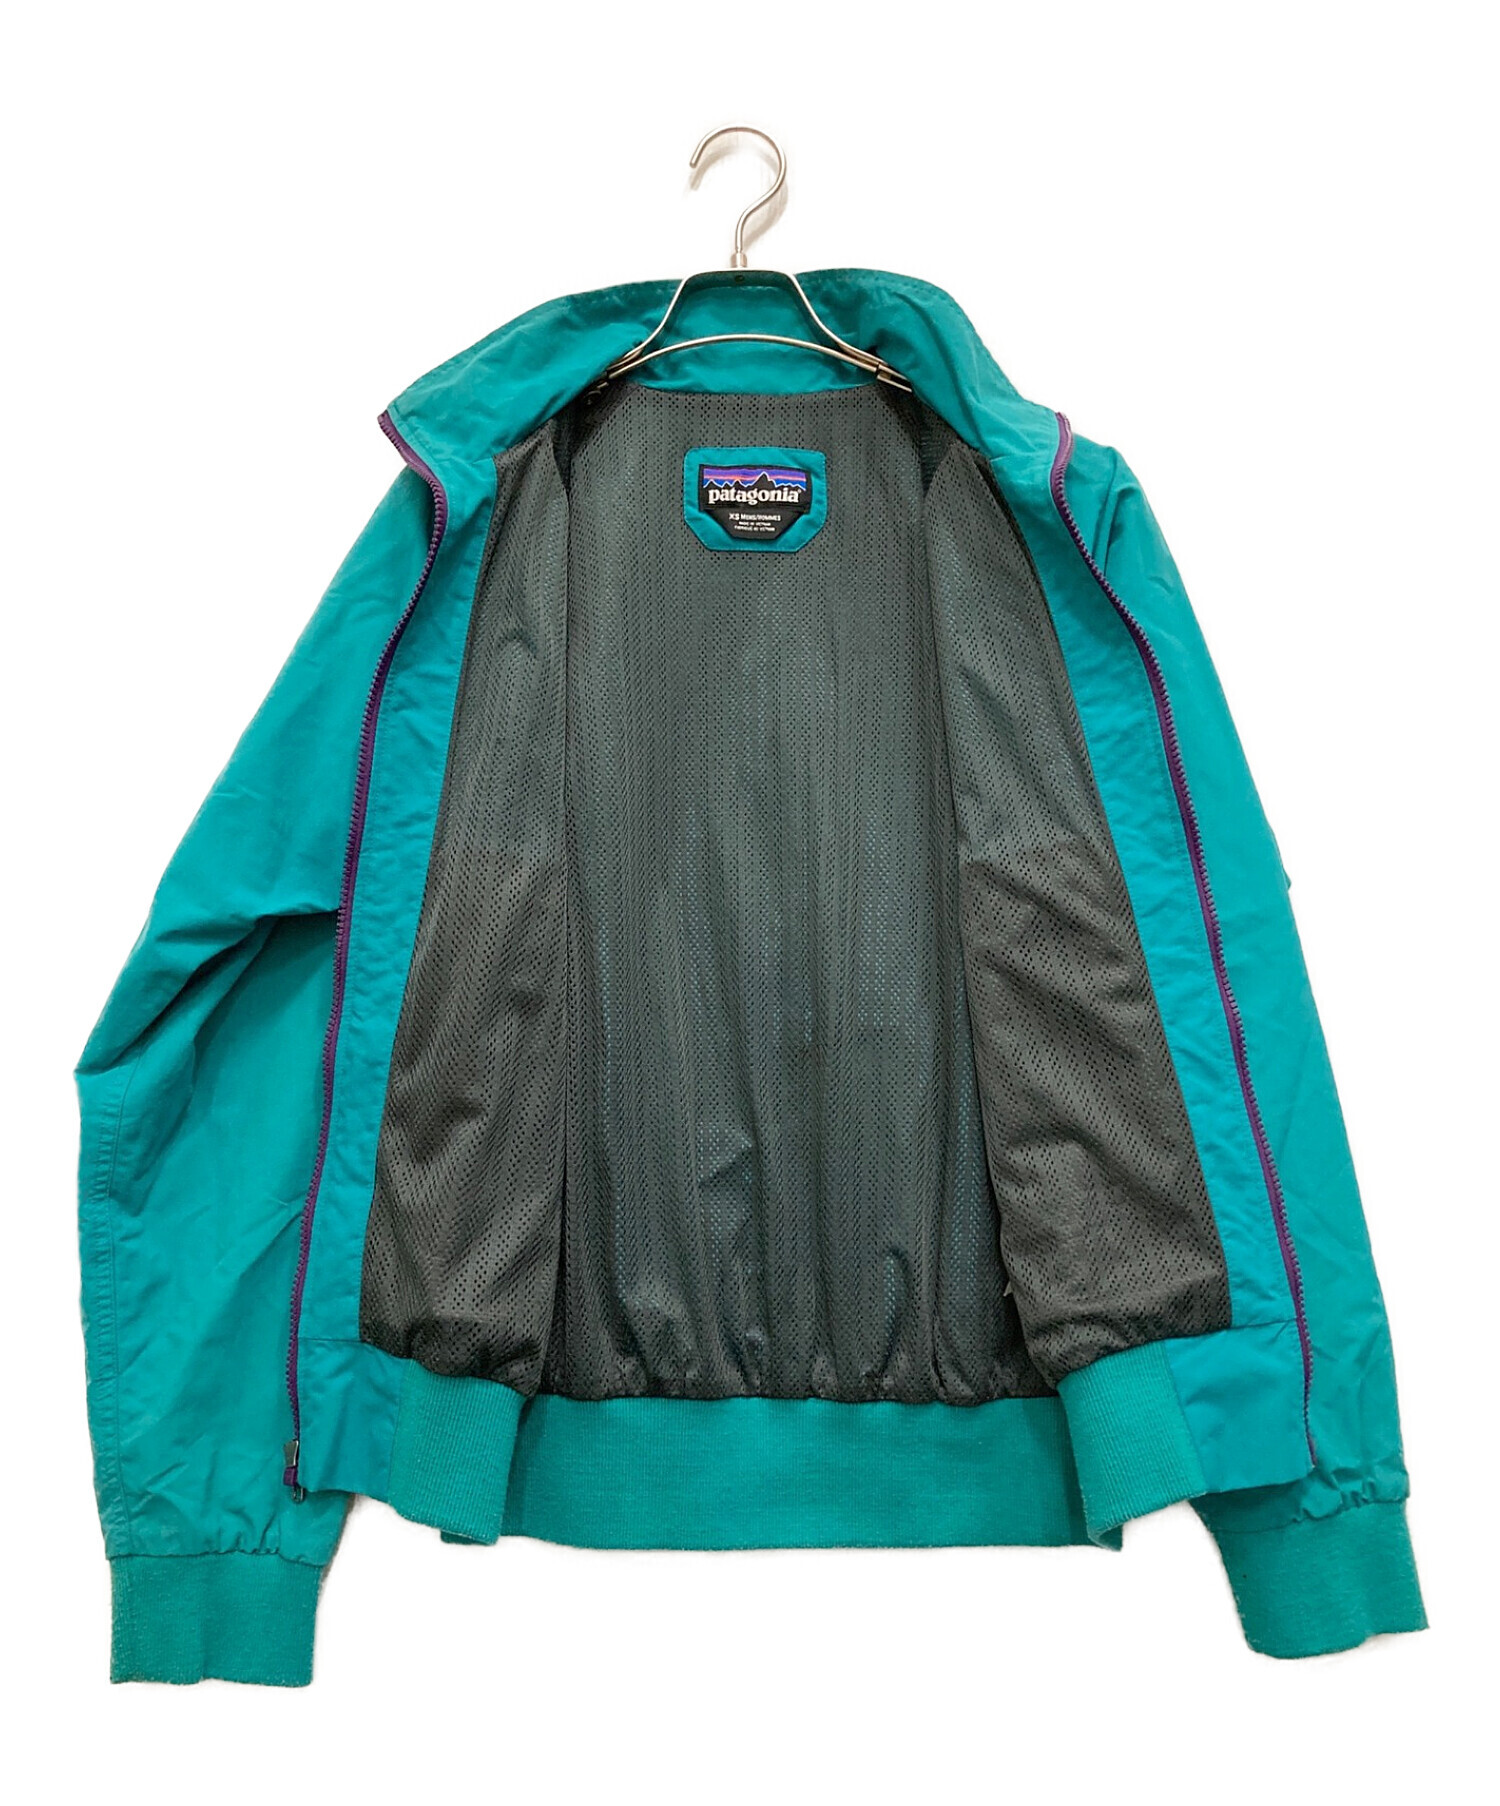 Patagonia (パタゴニア) バギーズジャケット グリーン サイズ:XS